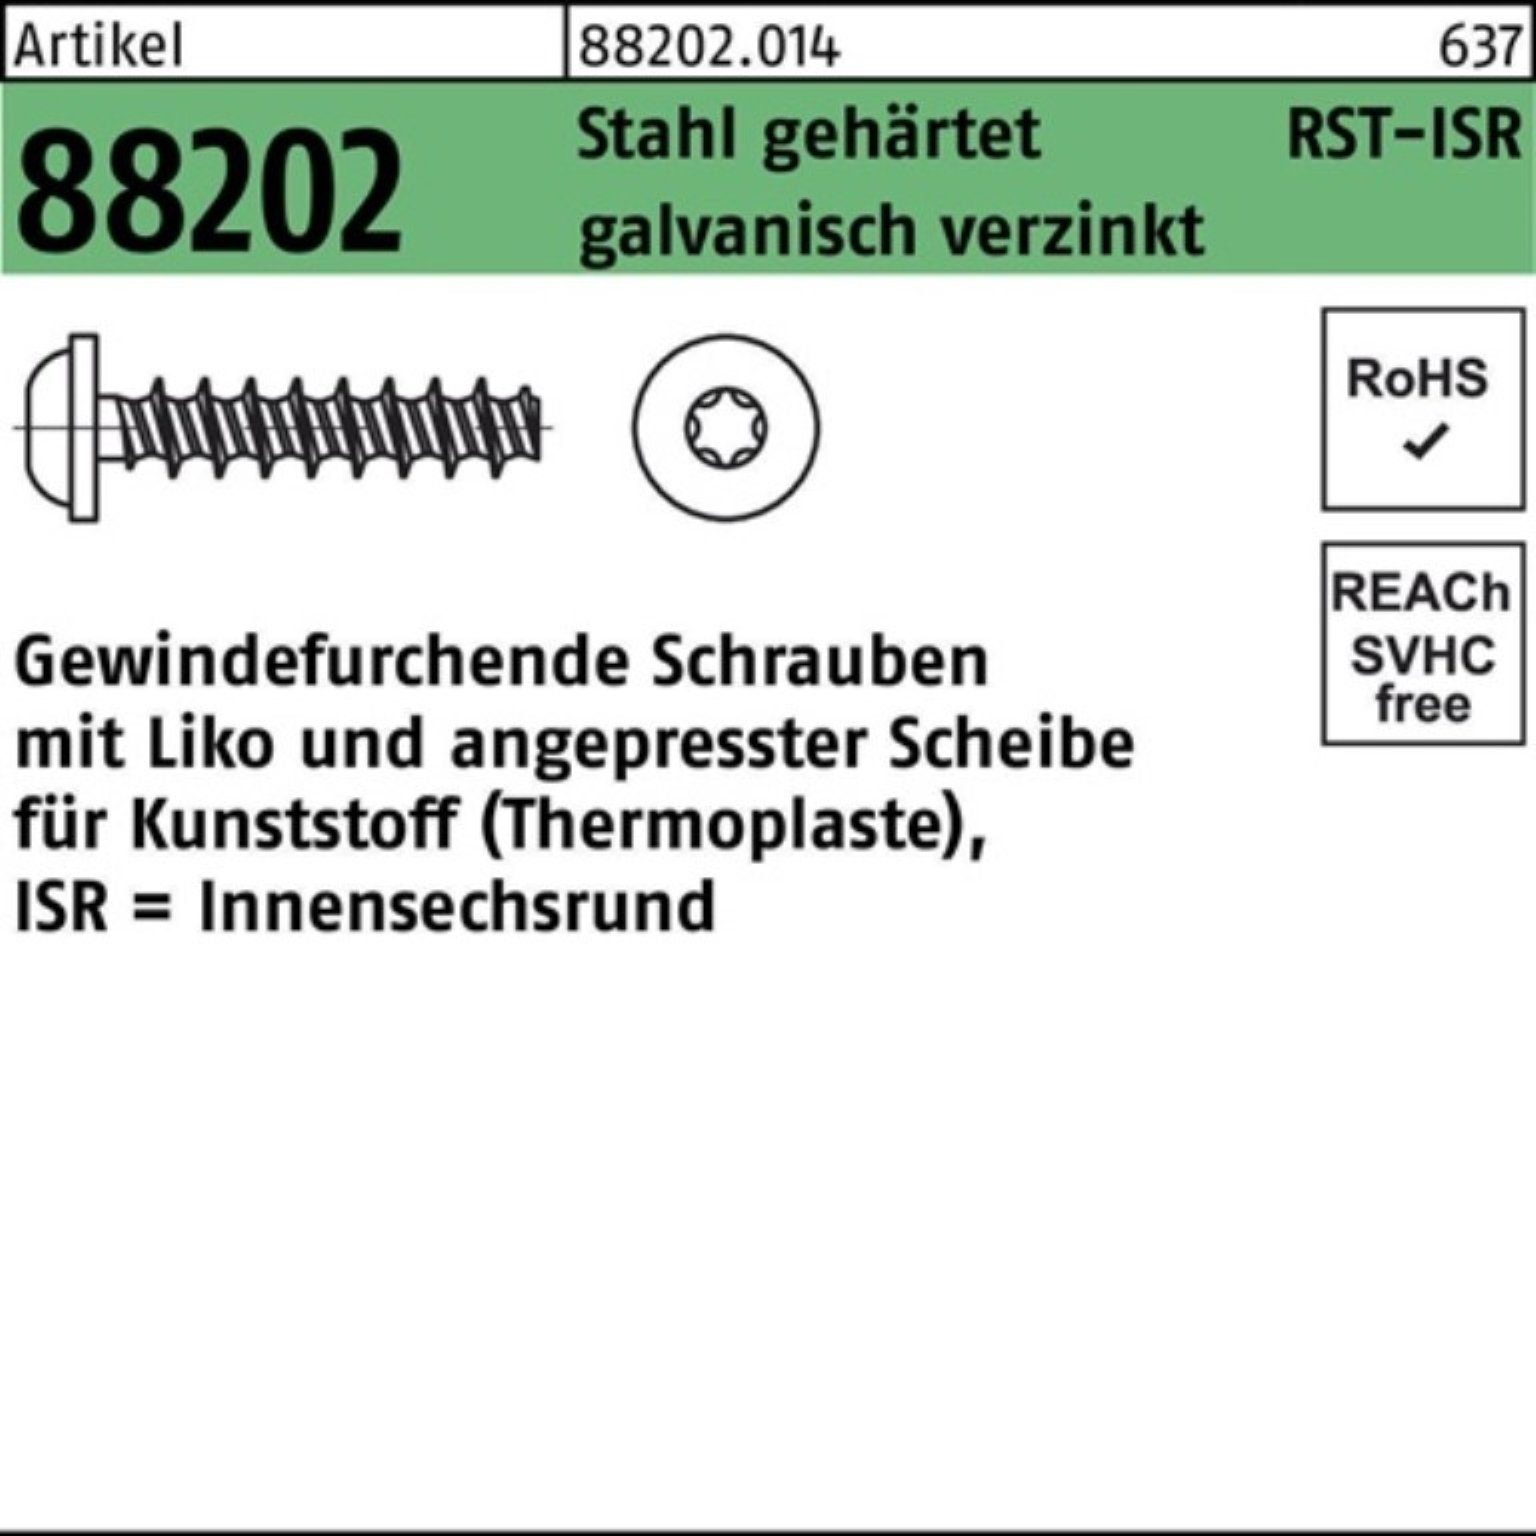 Reyher Gewindeschraube 1000er Pack Gewindefurchendeschraube R 88202 Liko ISR 2,2x6-T6 Stahl g